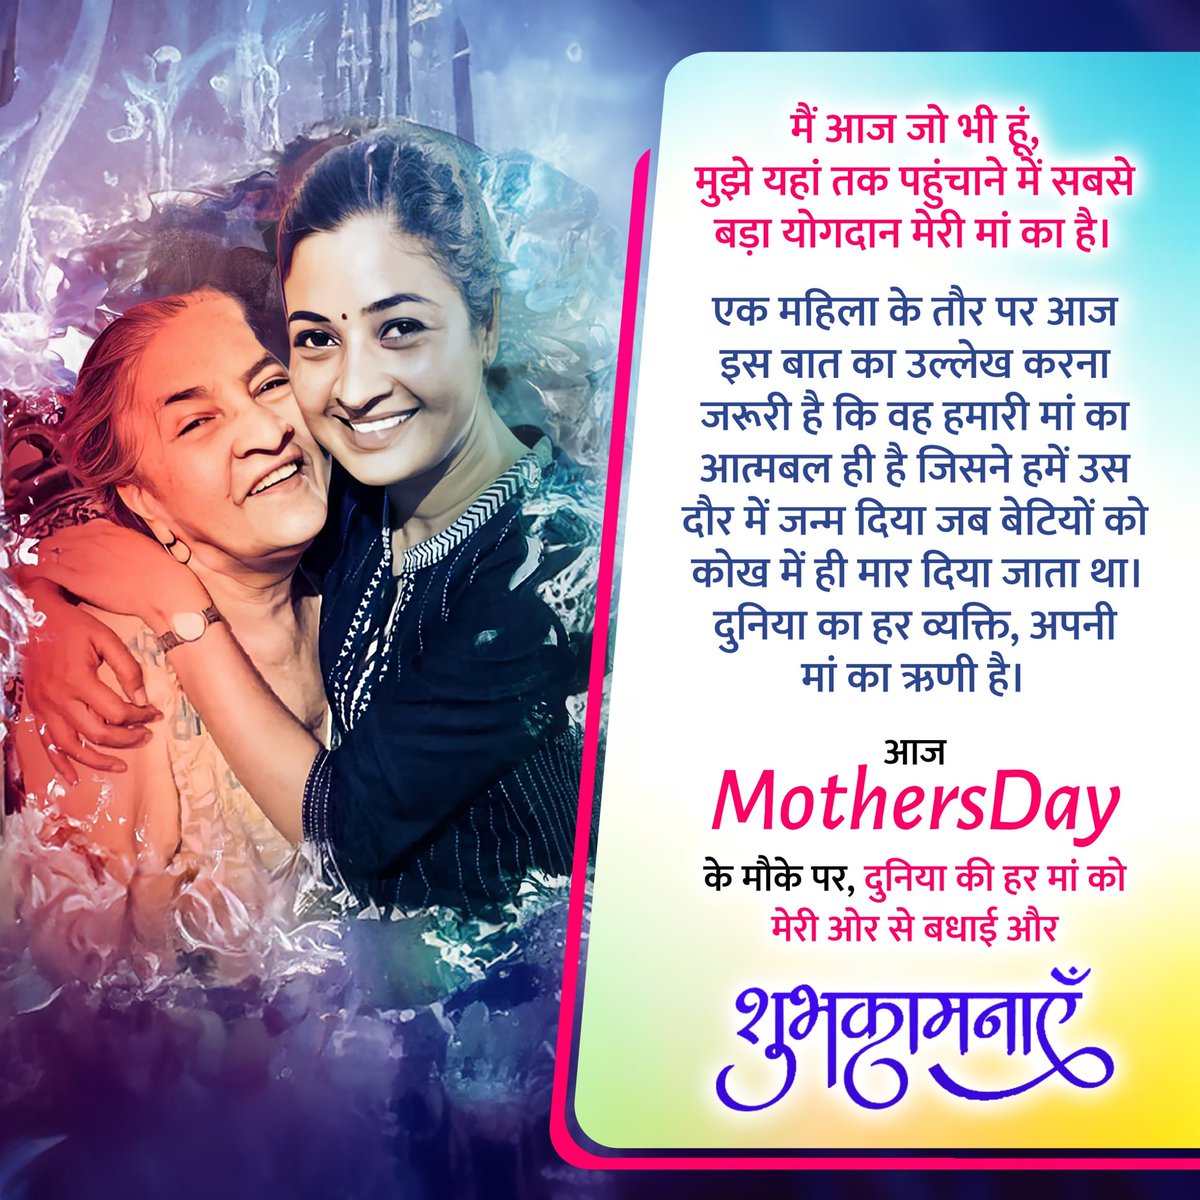 आज #MothersDay पर, मेरी ओर से हर मां को समर्पित एक छोटा सा संदेश! ❤️